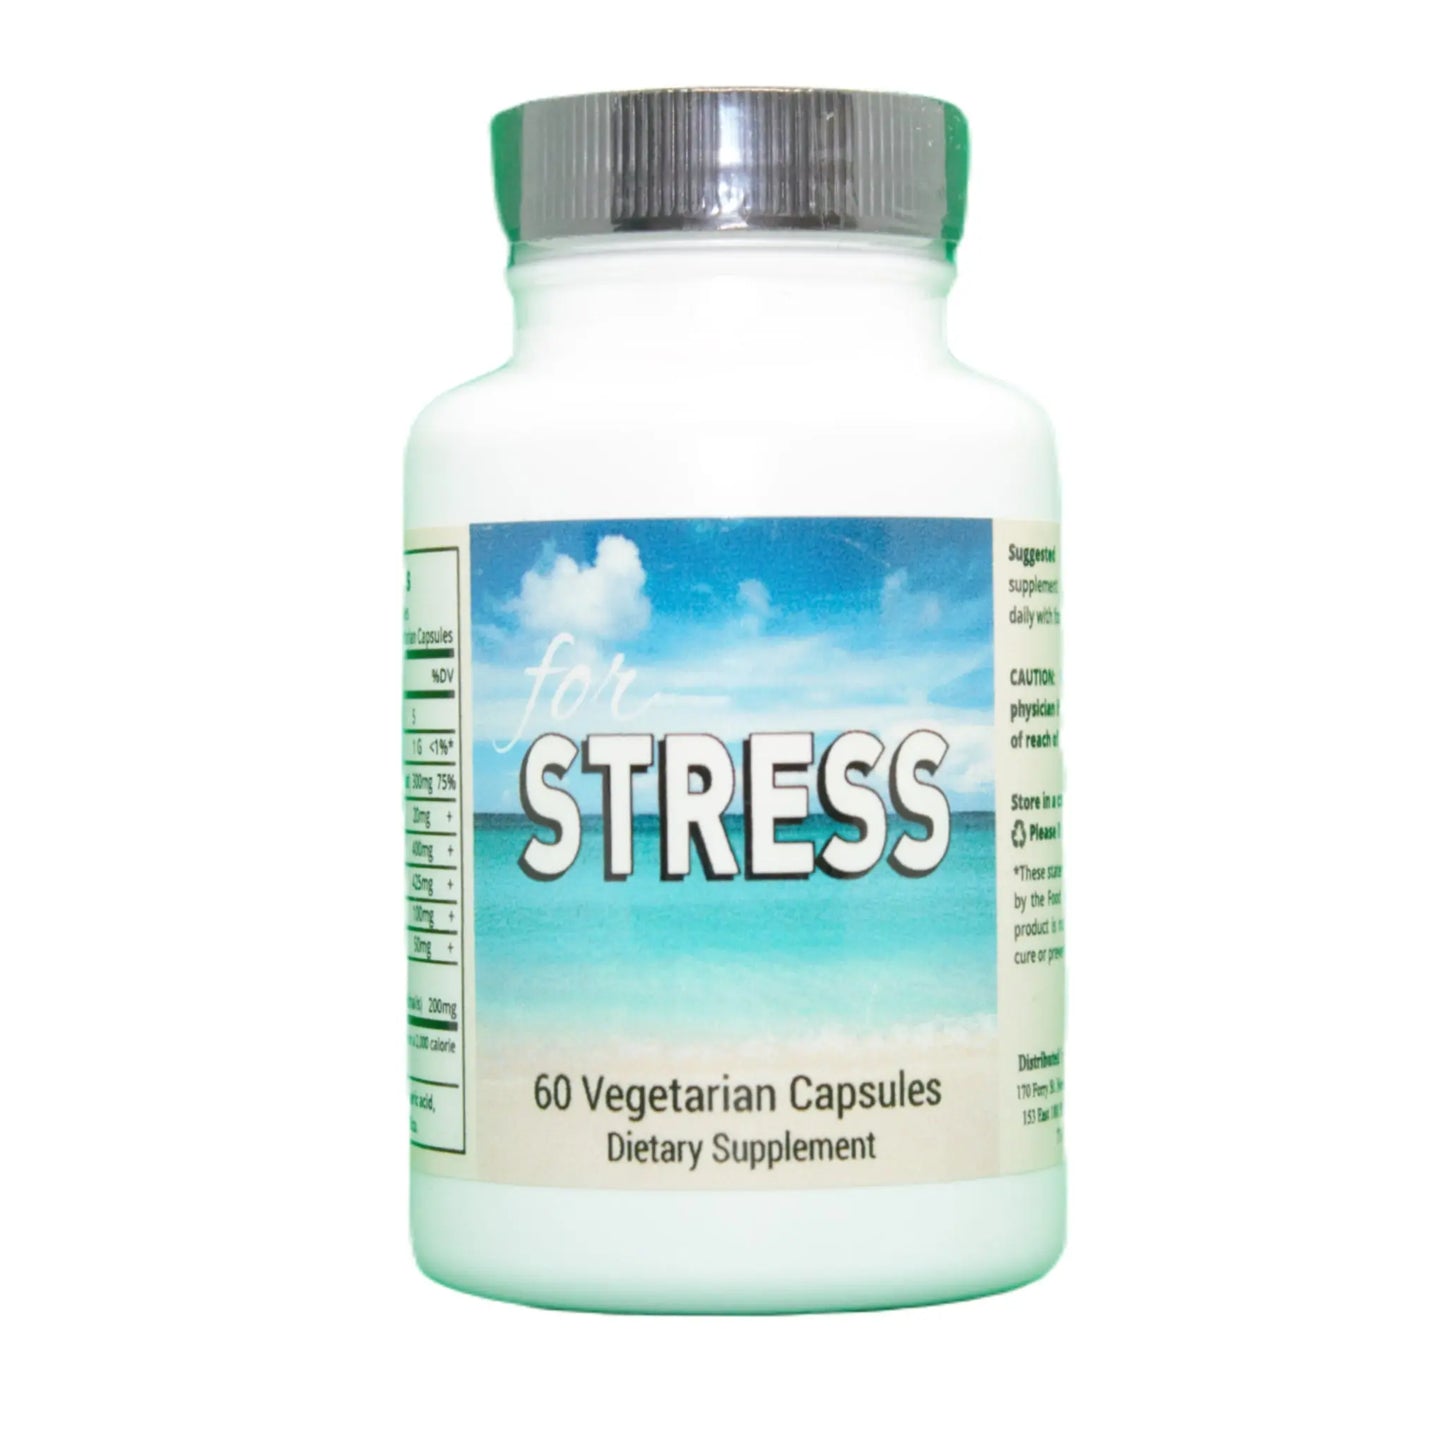 
                  
                    For Stress, 60 Veg Capsules Manteniendo Tu Salud
                  
                